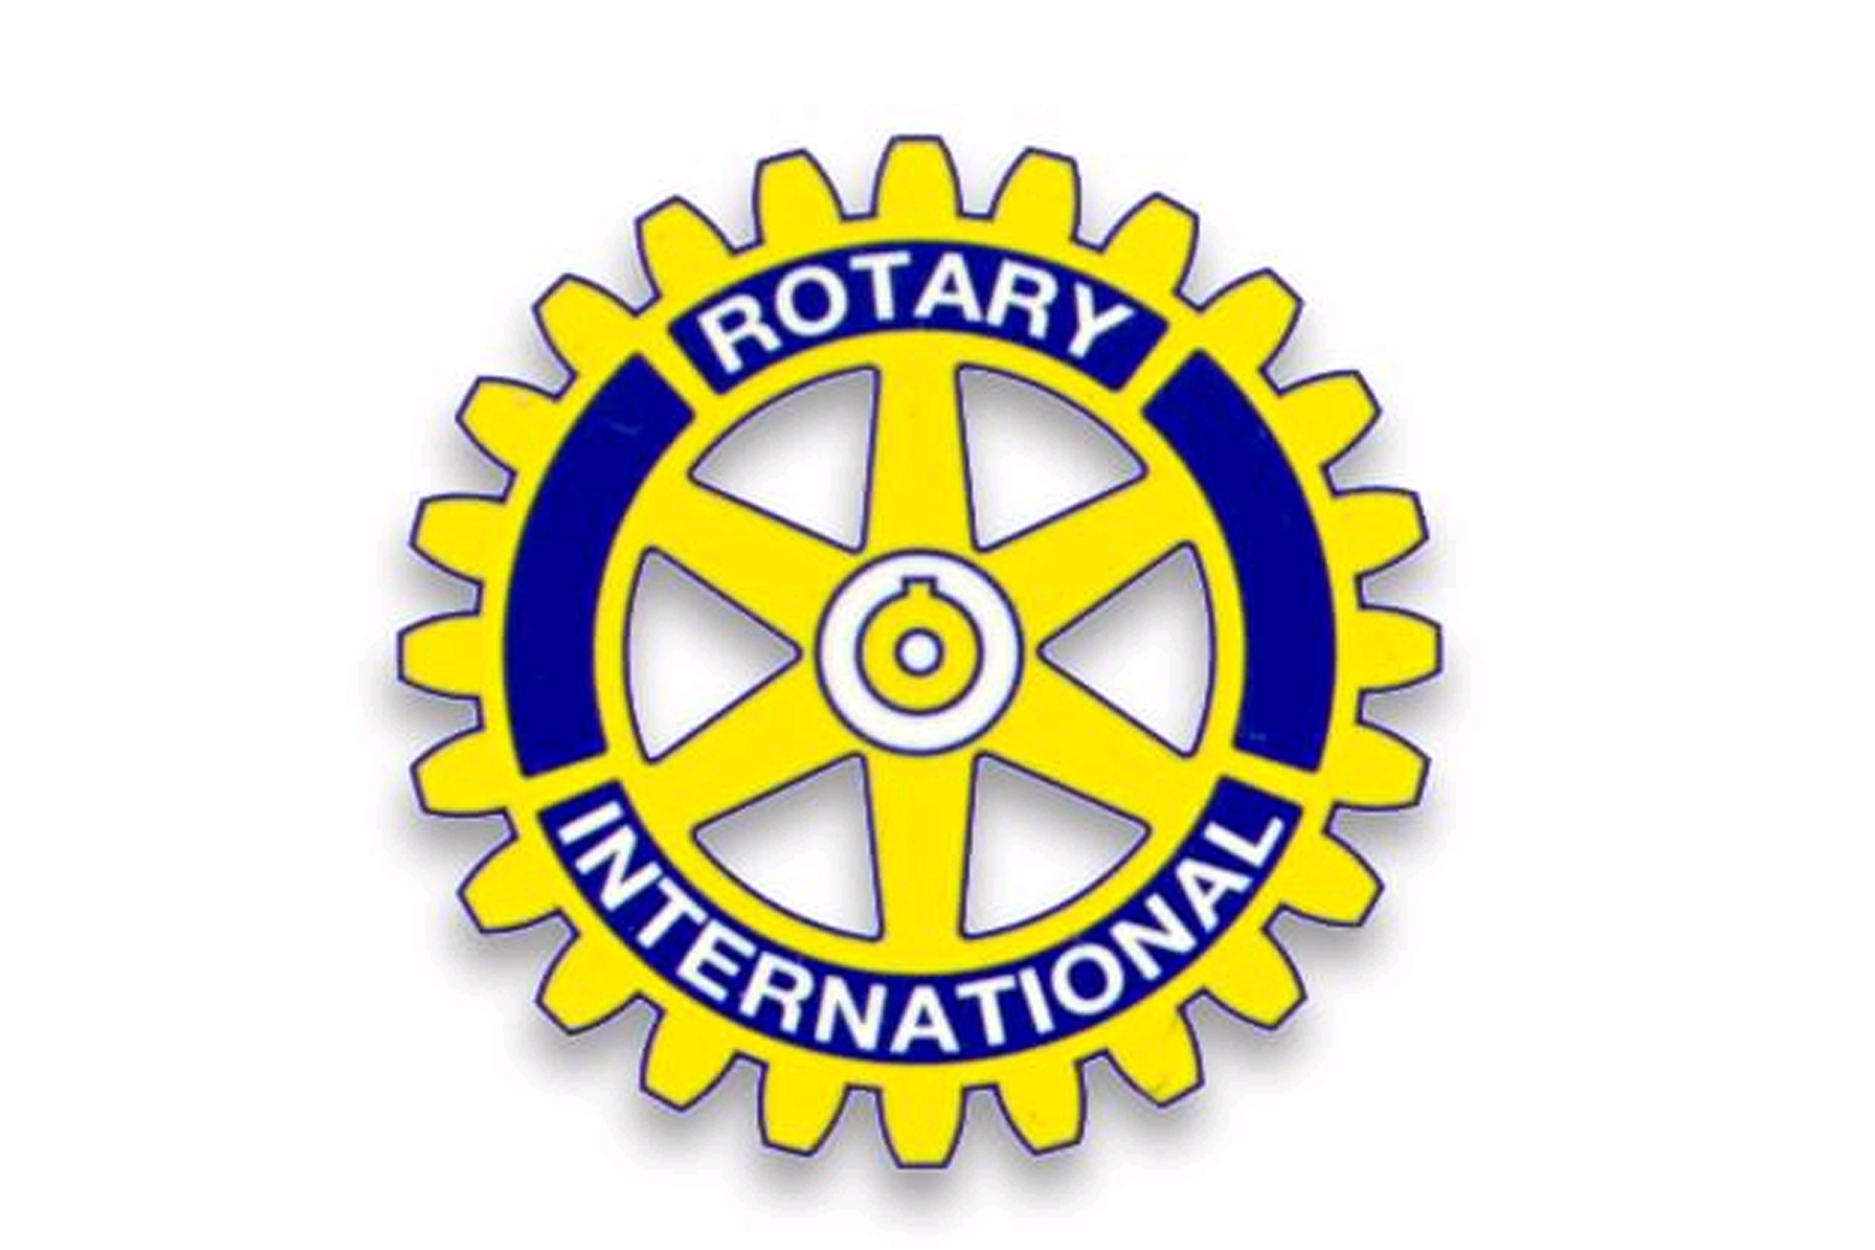 Rotary international clipart - ClipartFox